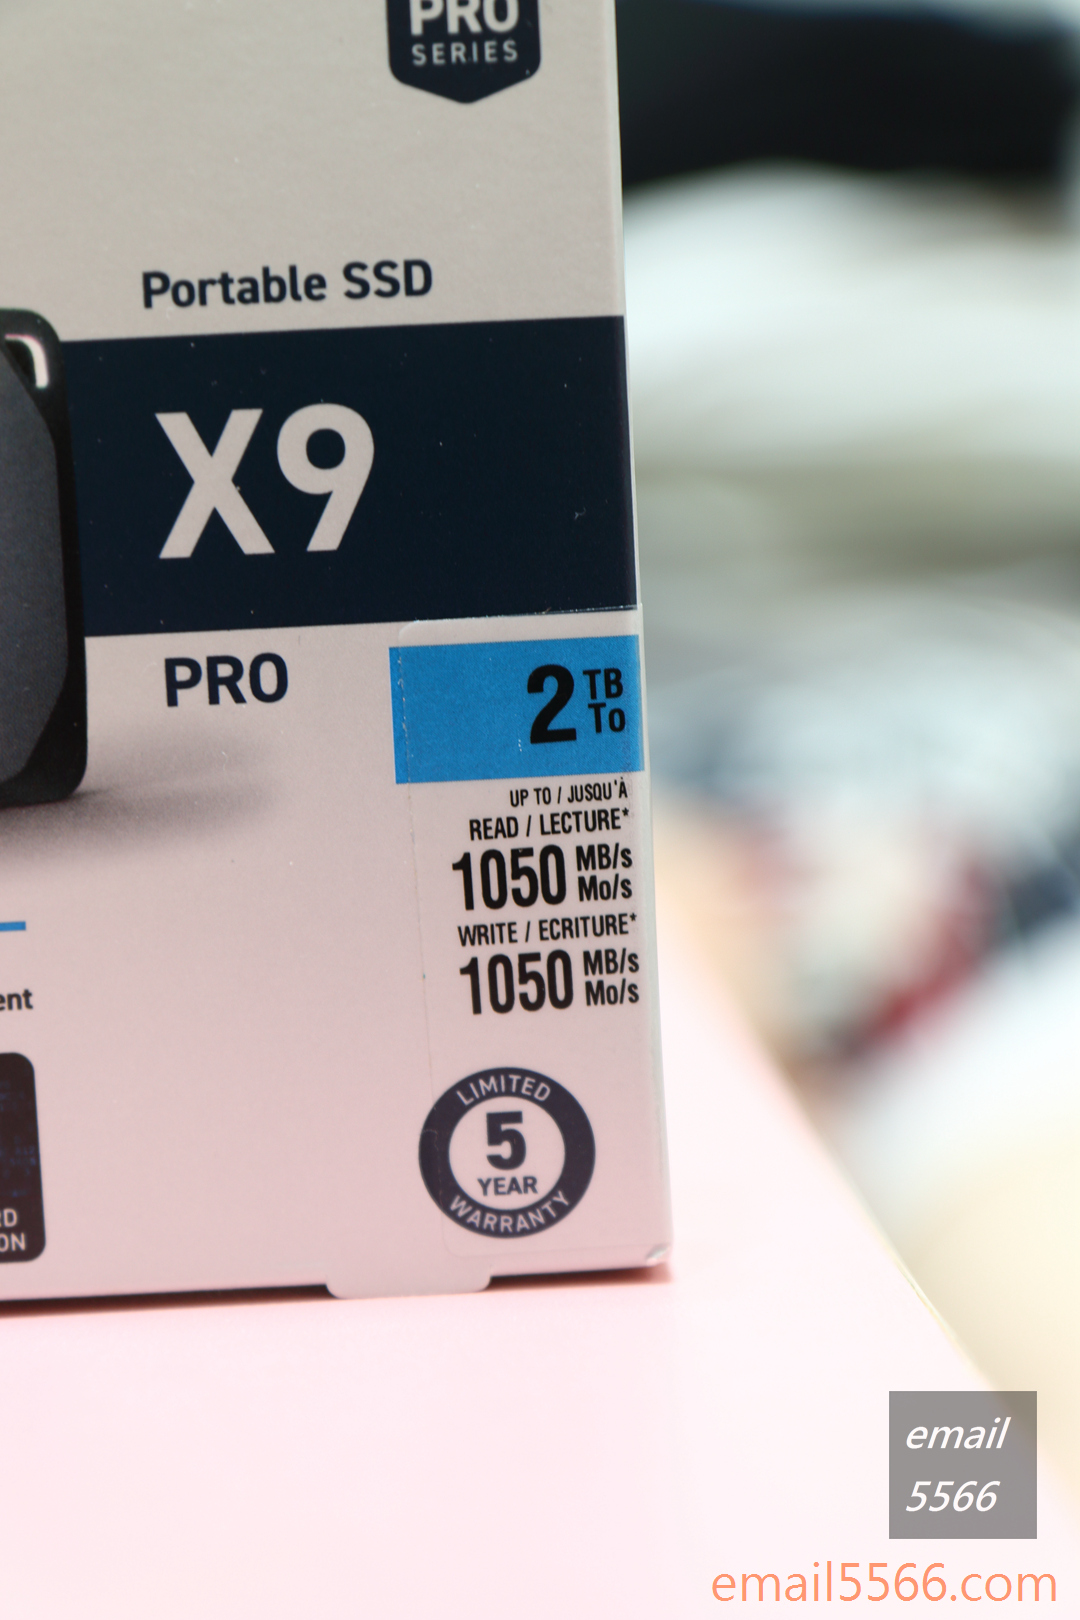 美光 Crucial X9 Pro 行動SSD硬碟 2TB 開箱-提供五年有限保固